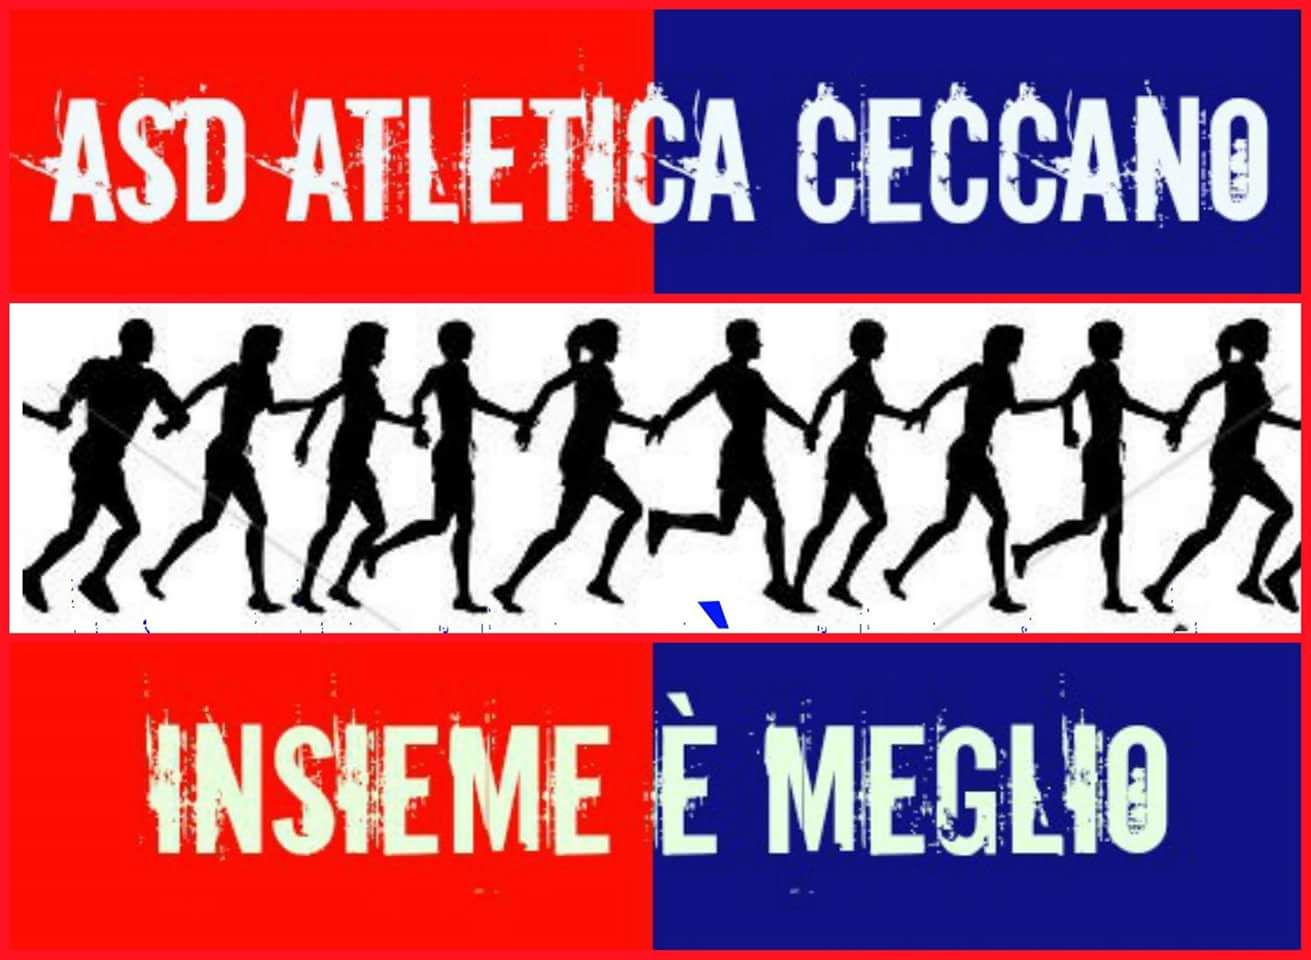 ASD - Atletica Ceccano